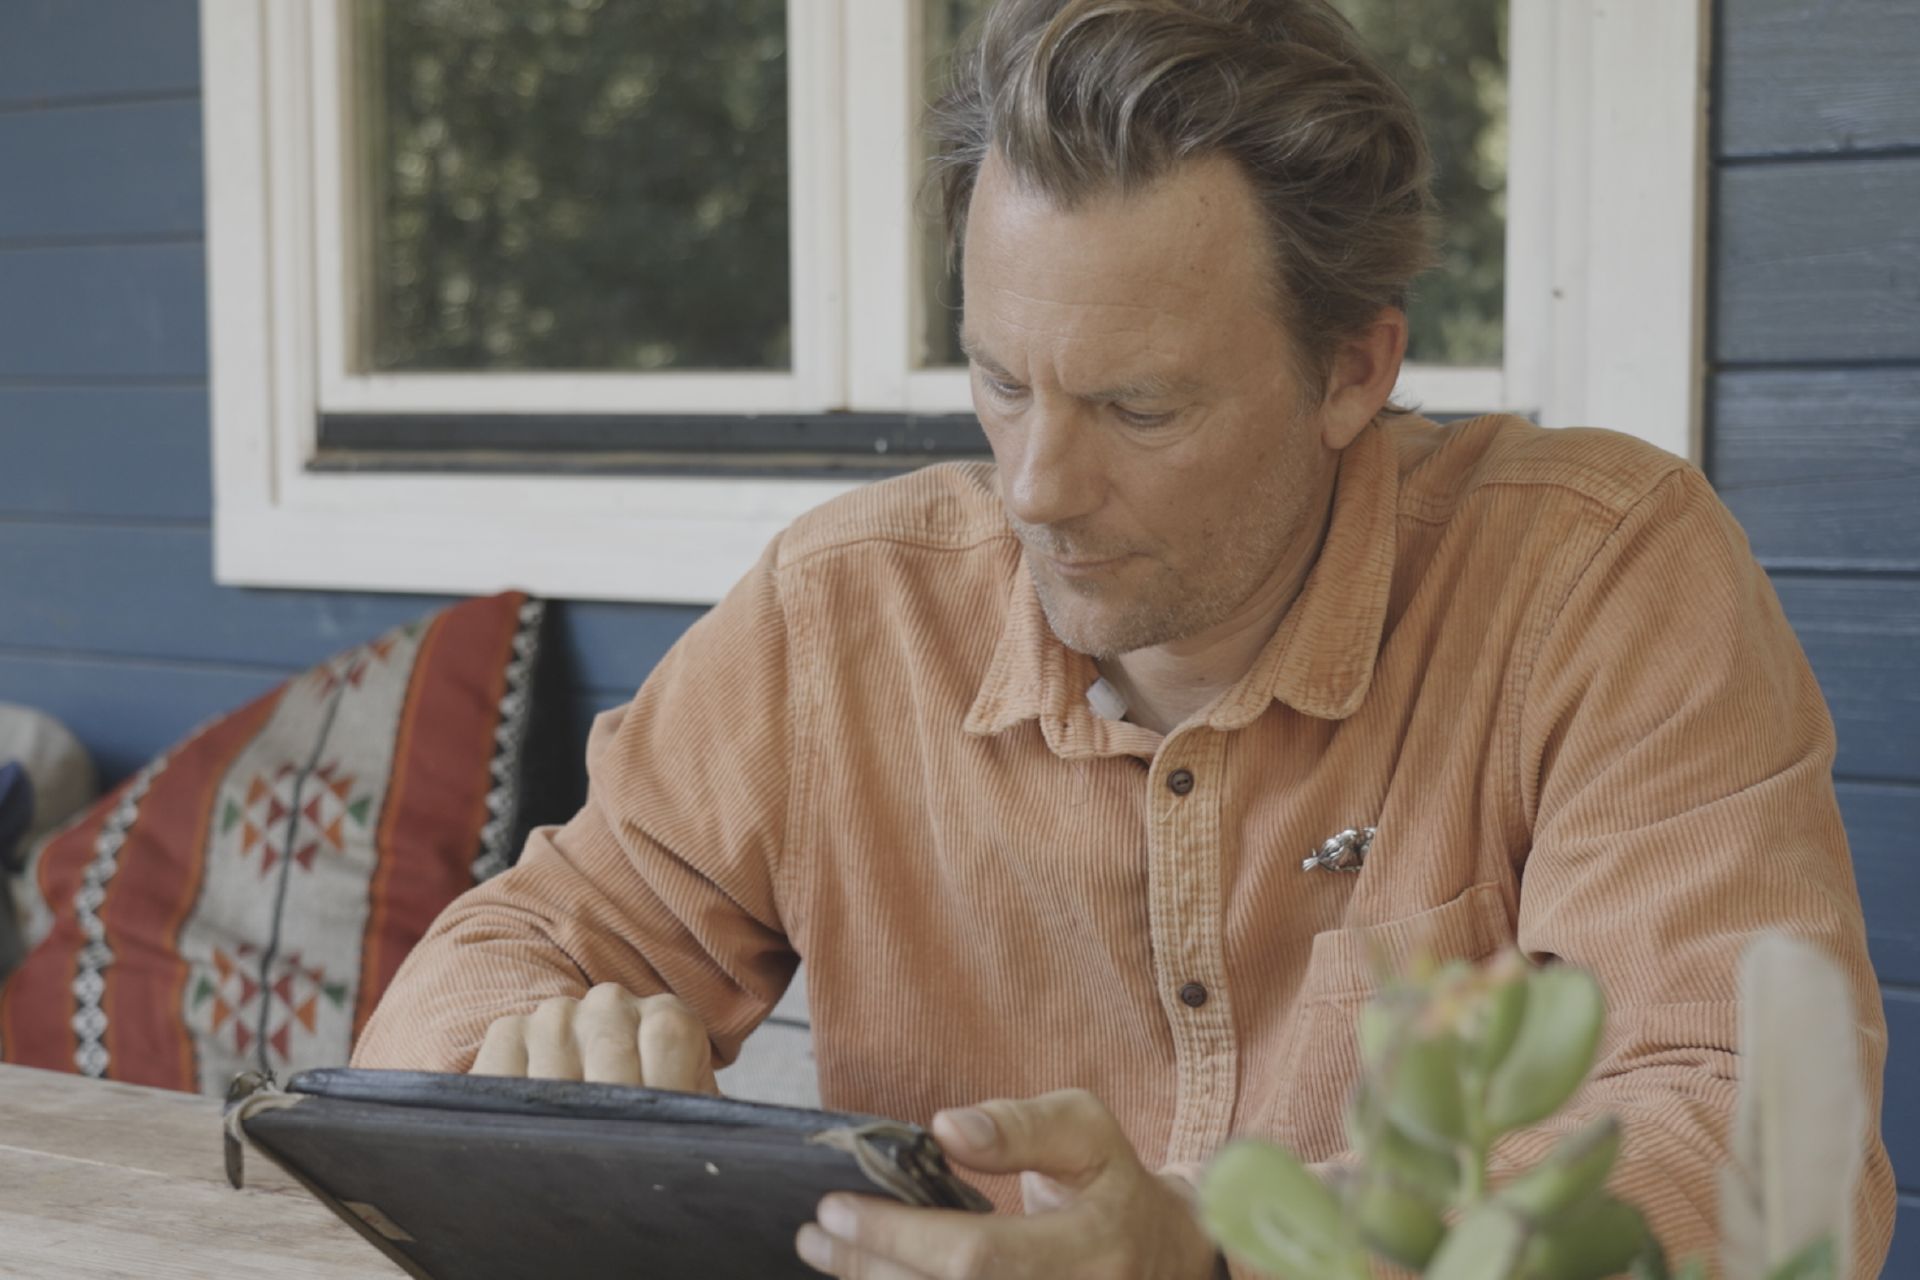 Marten Persiel trabajando en el exterior con una tablet